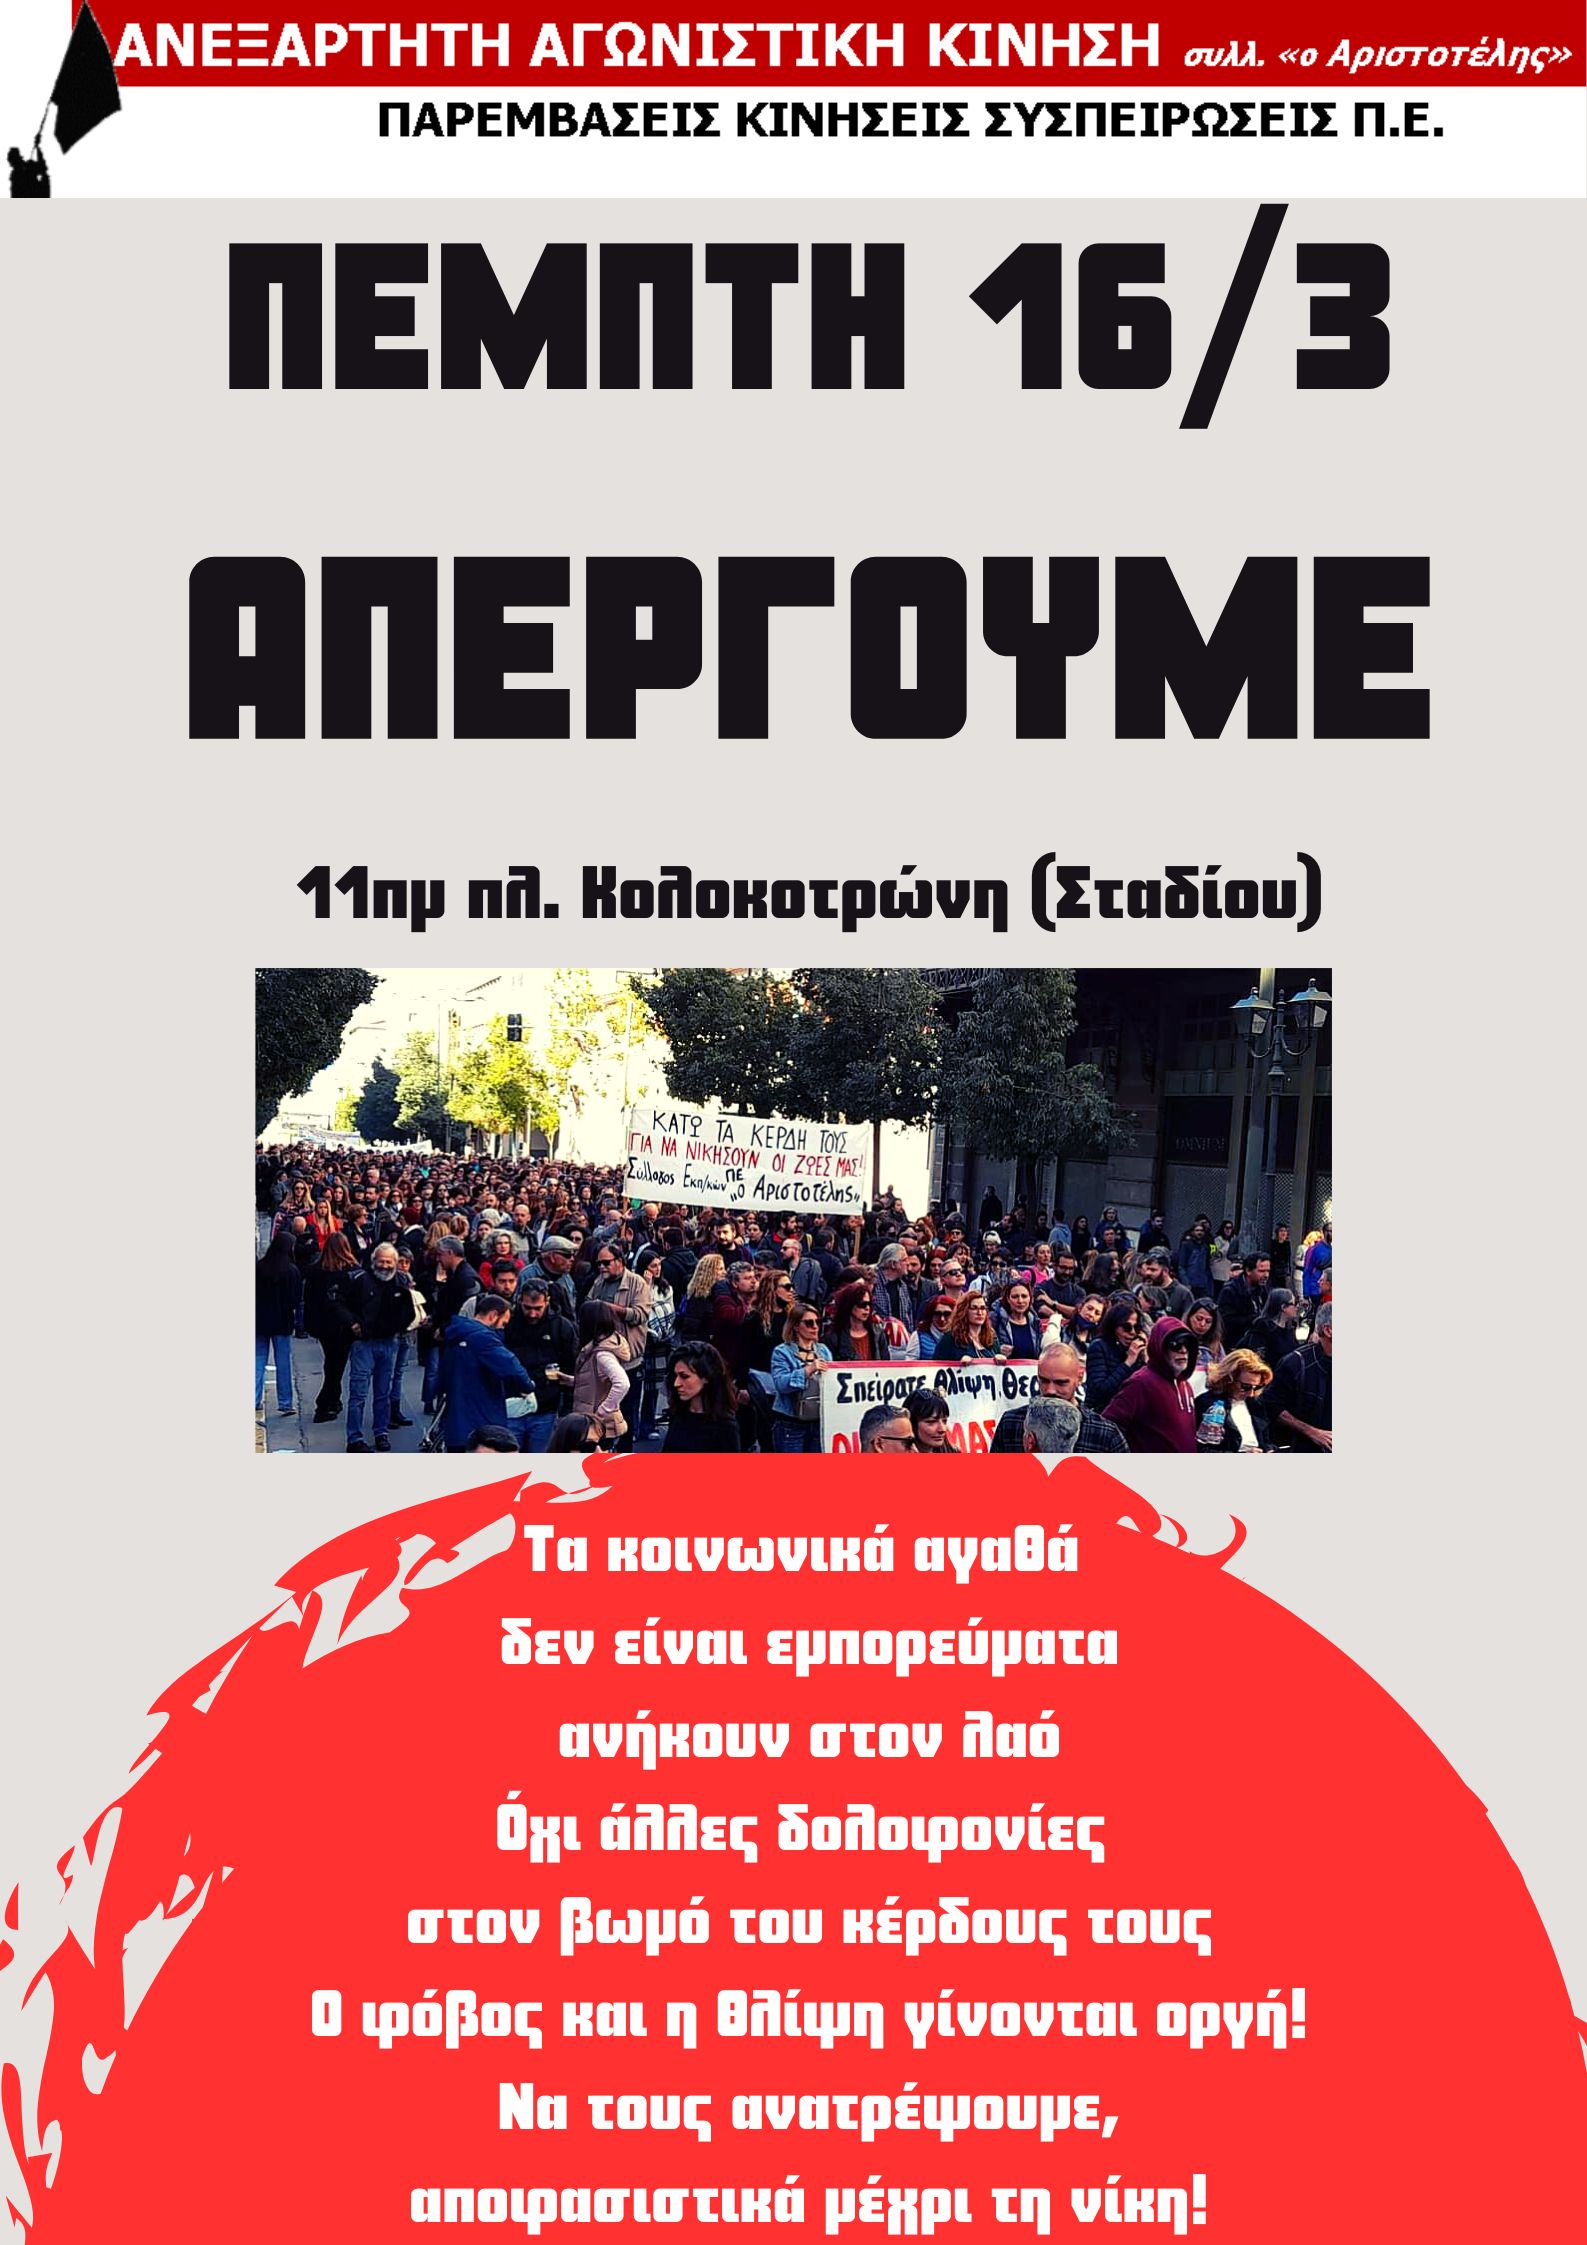 Παρεμβάσεις Αριστοτέλη: Όλες/Όλοι στην απεργία στις 16 Μάρτη, με τα πρωτοβάθμια σωματεία, 11:00πμ πλ. Κολοκοτρώνη και Ενεργοποίηση του απεργιακού ταμείου